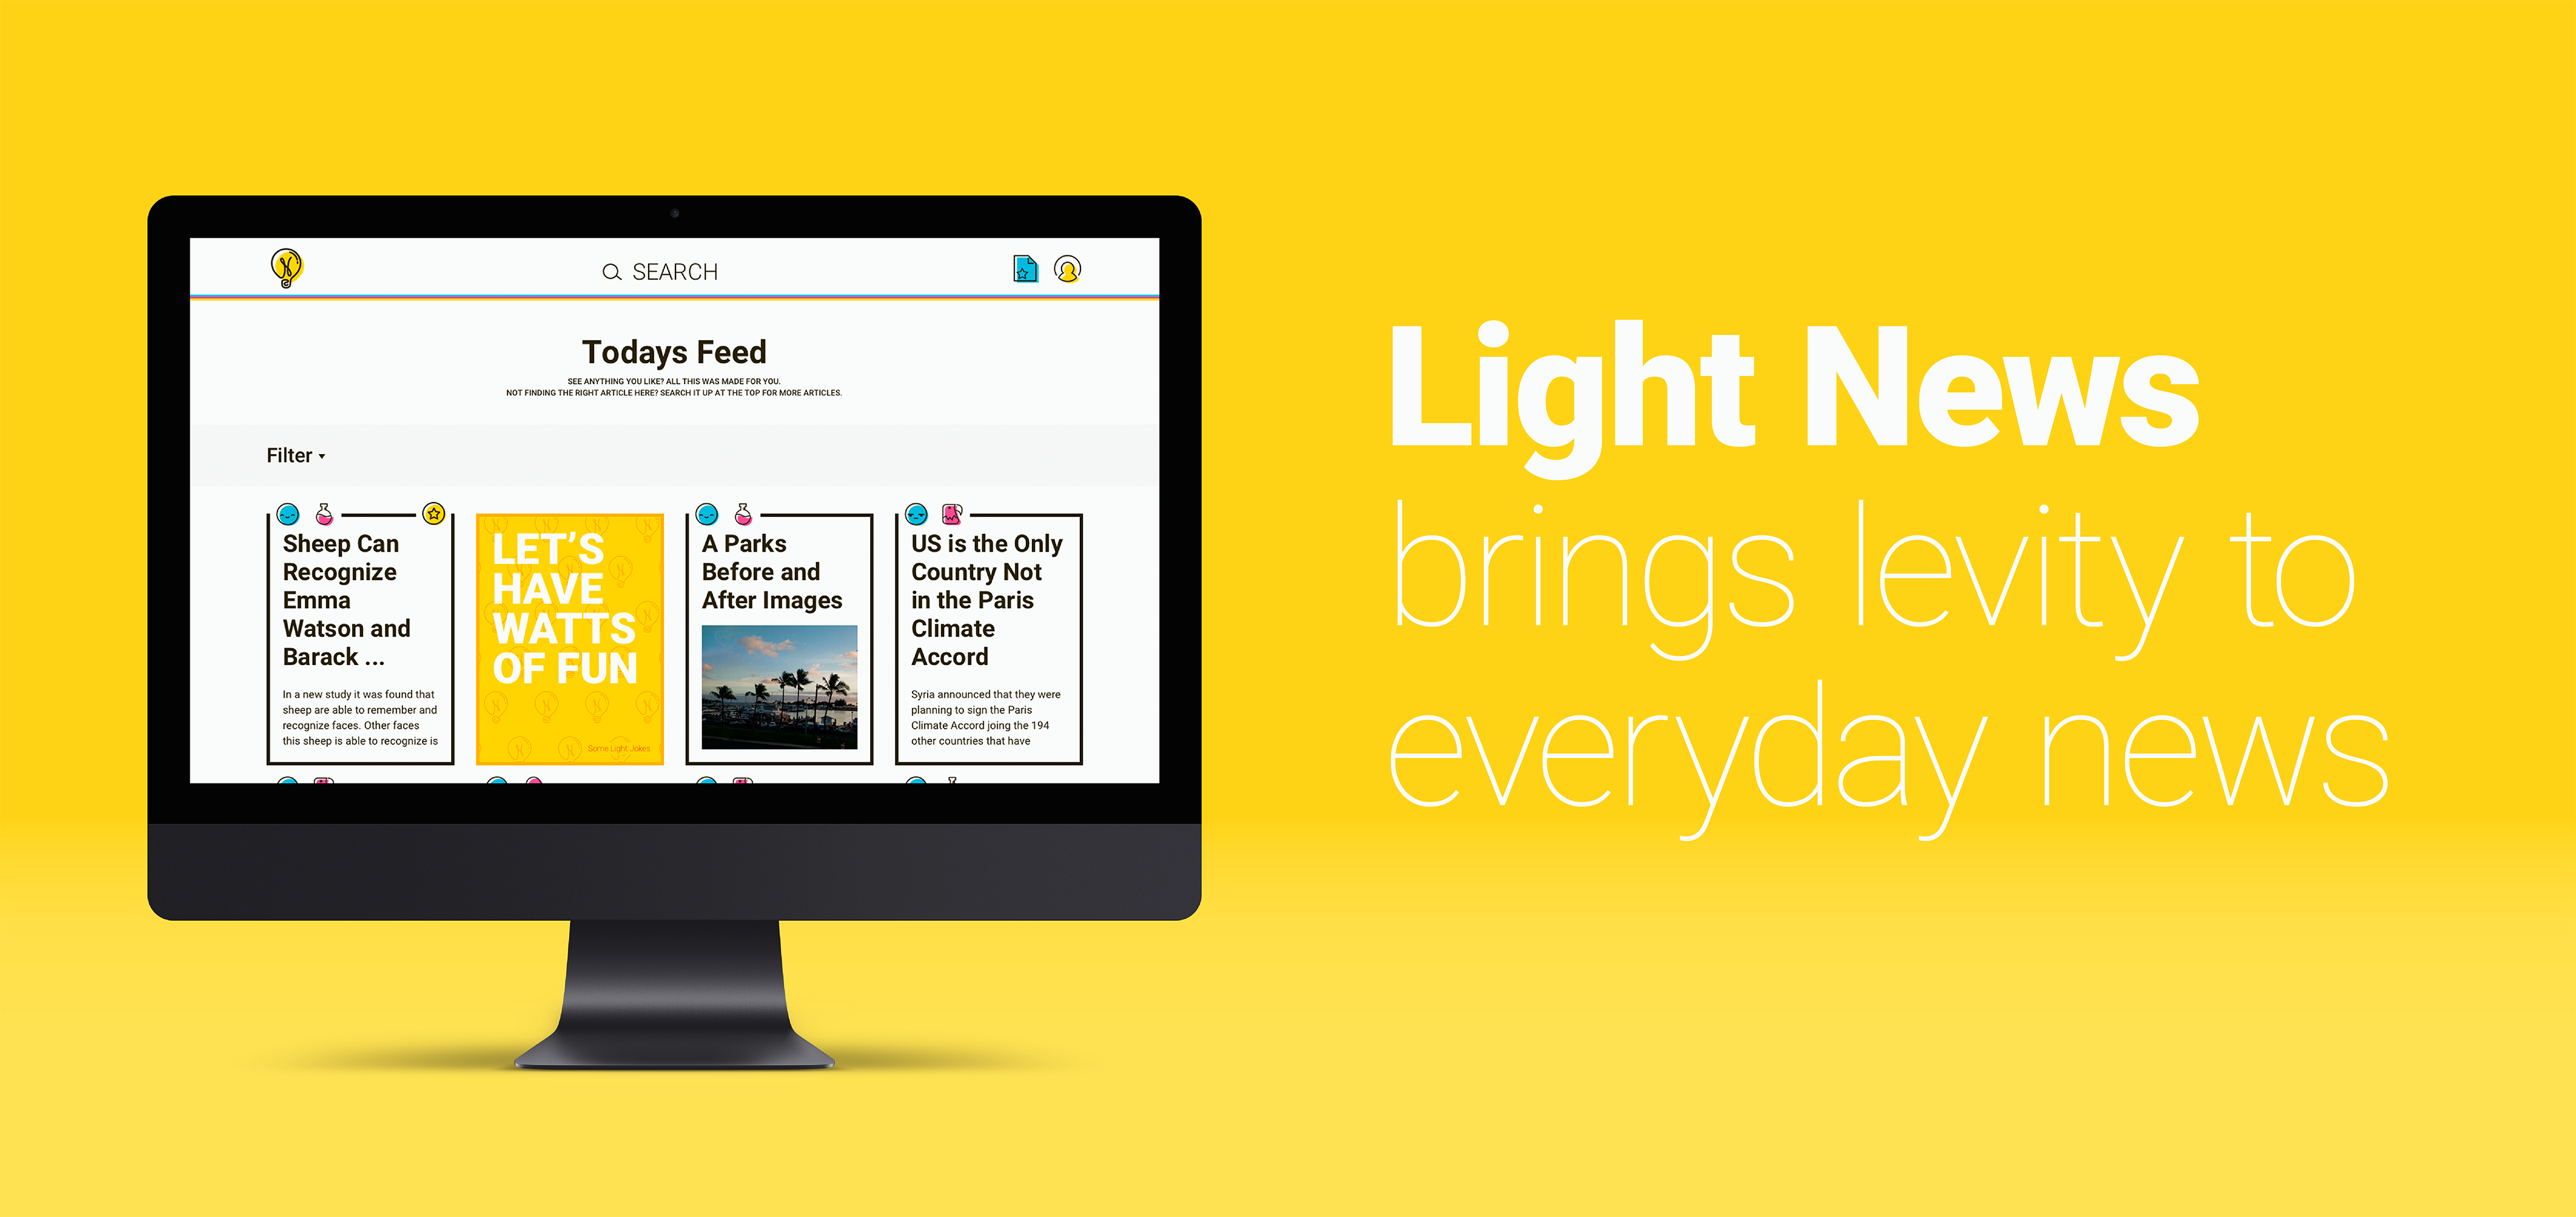 Light News marketing image